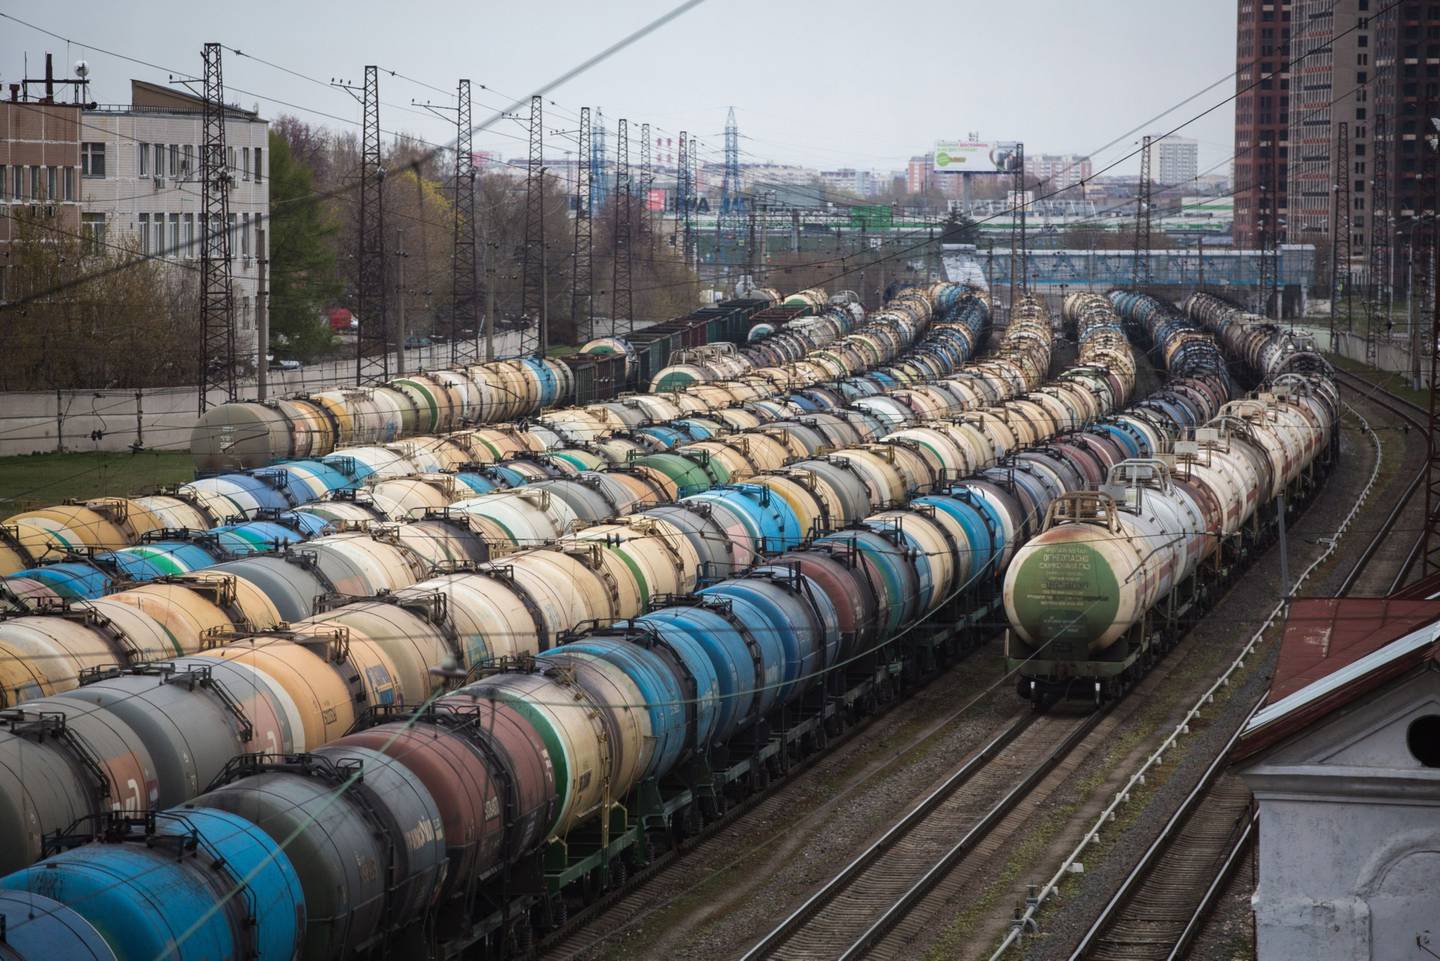 Vagones de ferrocarril para carga de petróleo, combustible y gas licuado se encuentran en la estación de tren de Yanichkino, junto a la refinería Gazprom Neft PJSC Moscow en Moscú, Rusia.